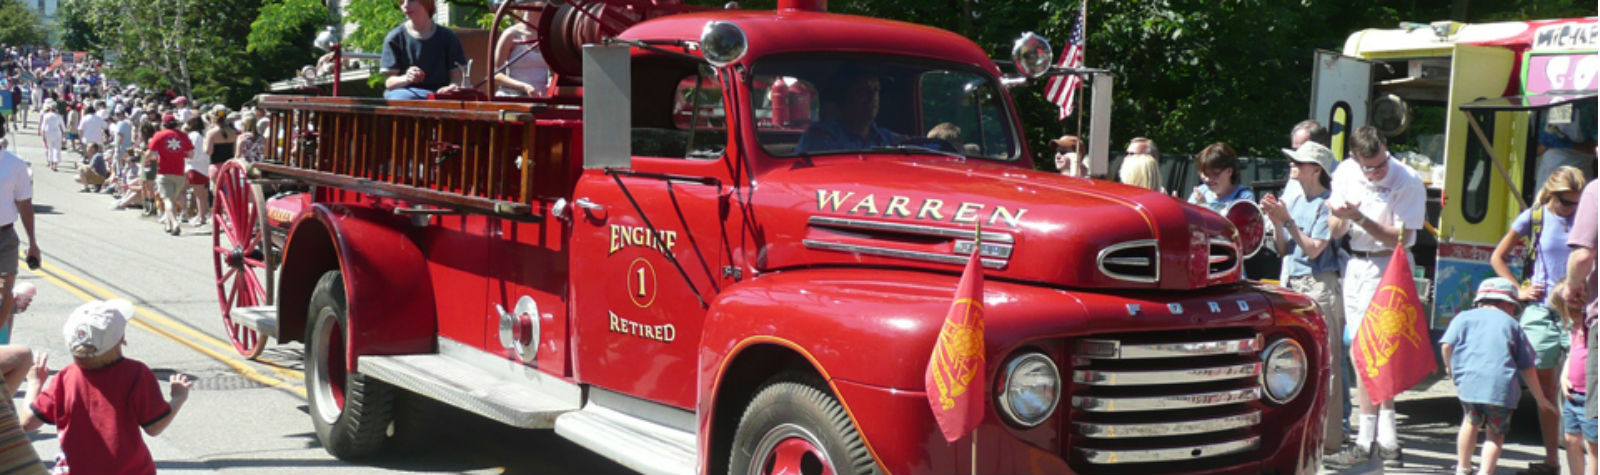 warren fire truck2